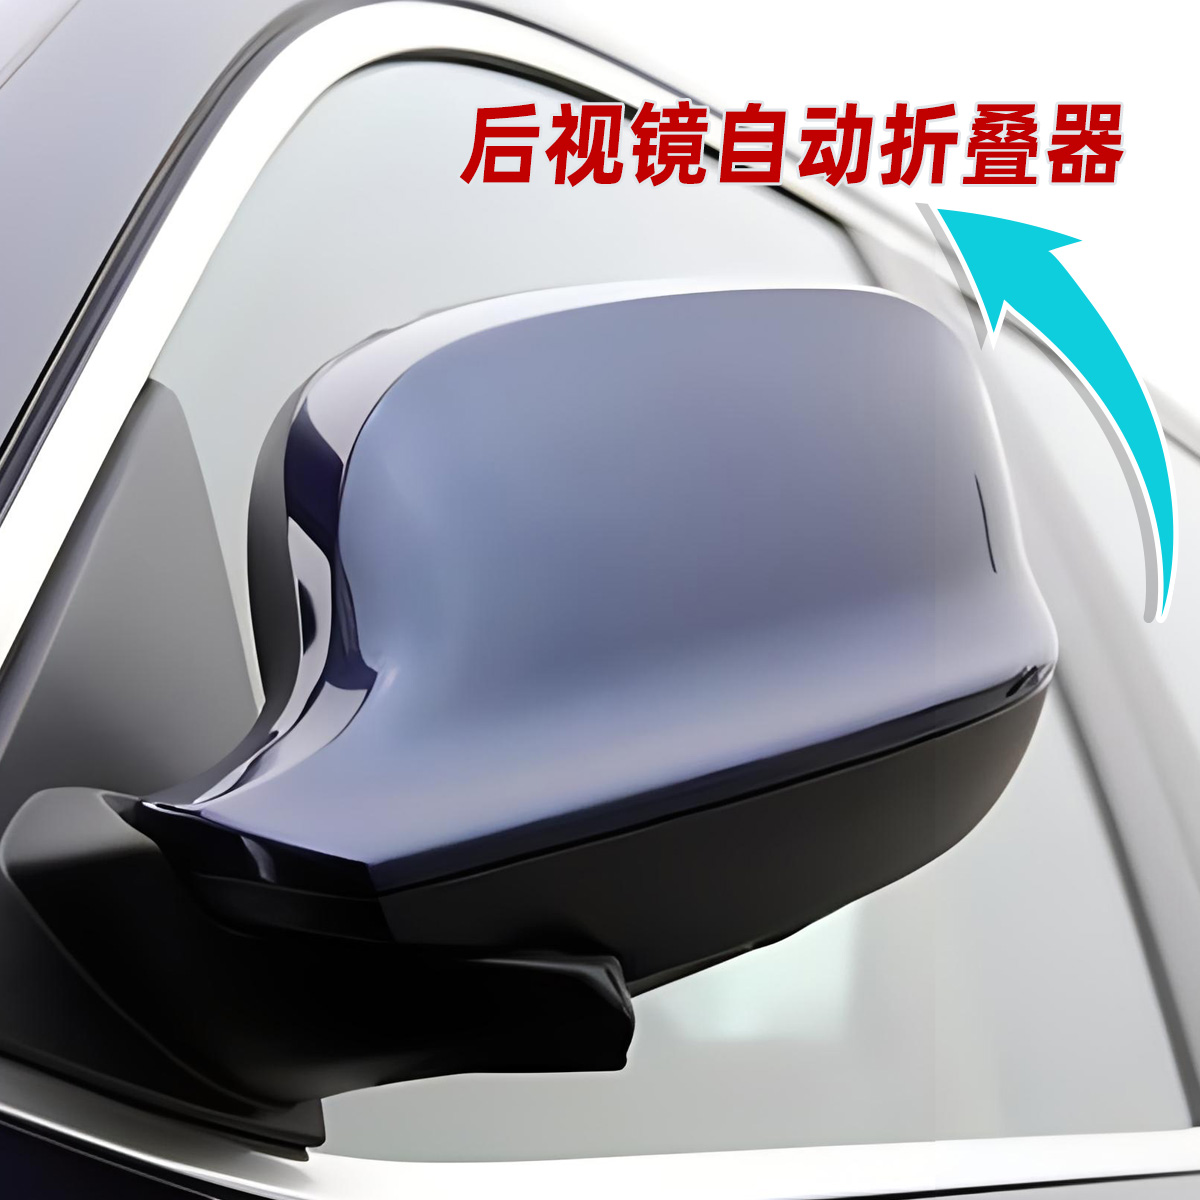 汽车后视镜折叠器通用改装遥控关锁车电动自动折叠后视镜控制模块